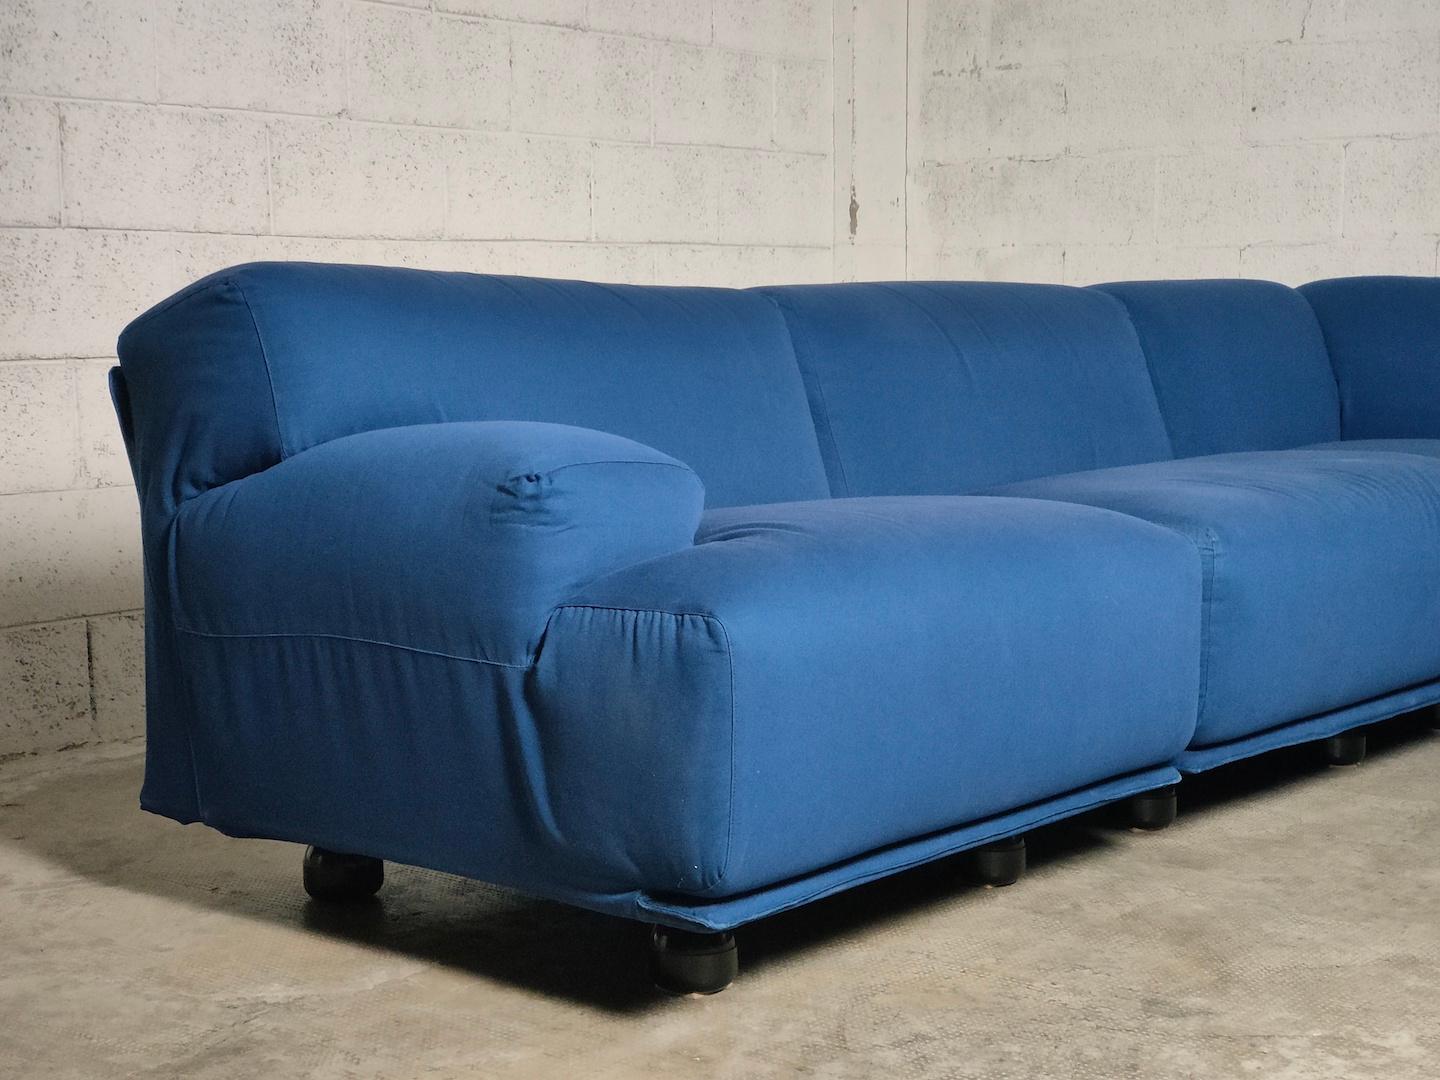 Fiandra modular sofa by Vico Magistretti for Cassina 70s For Sale 5